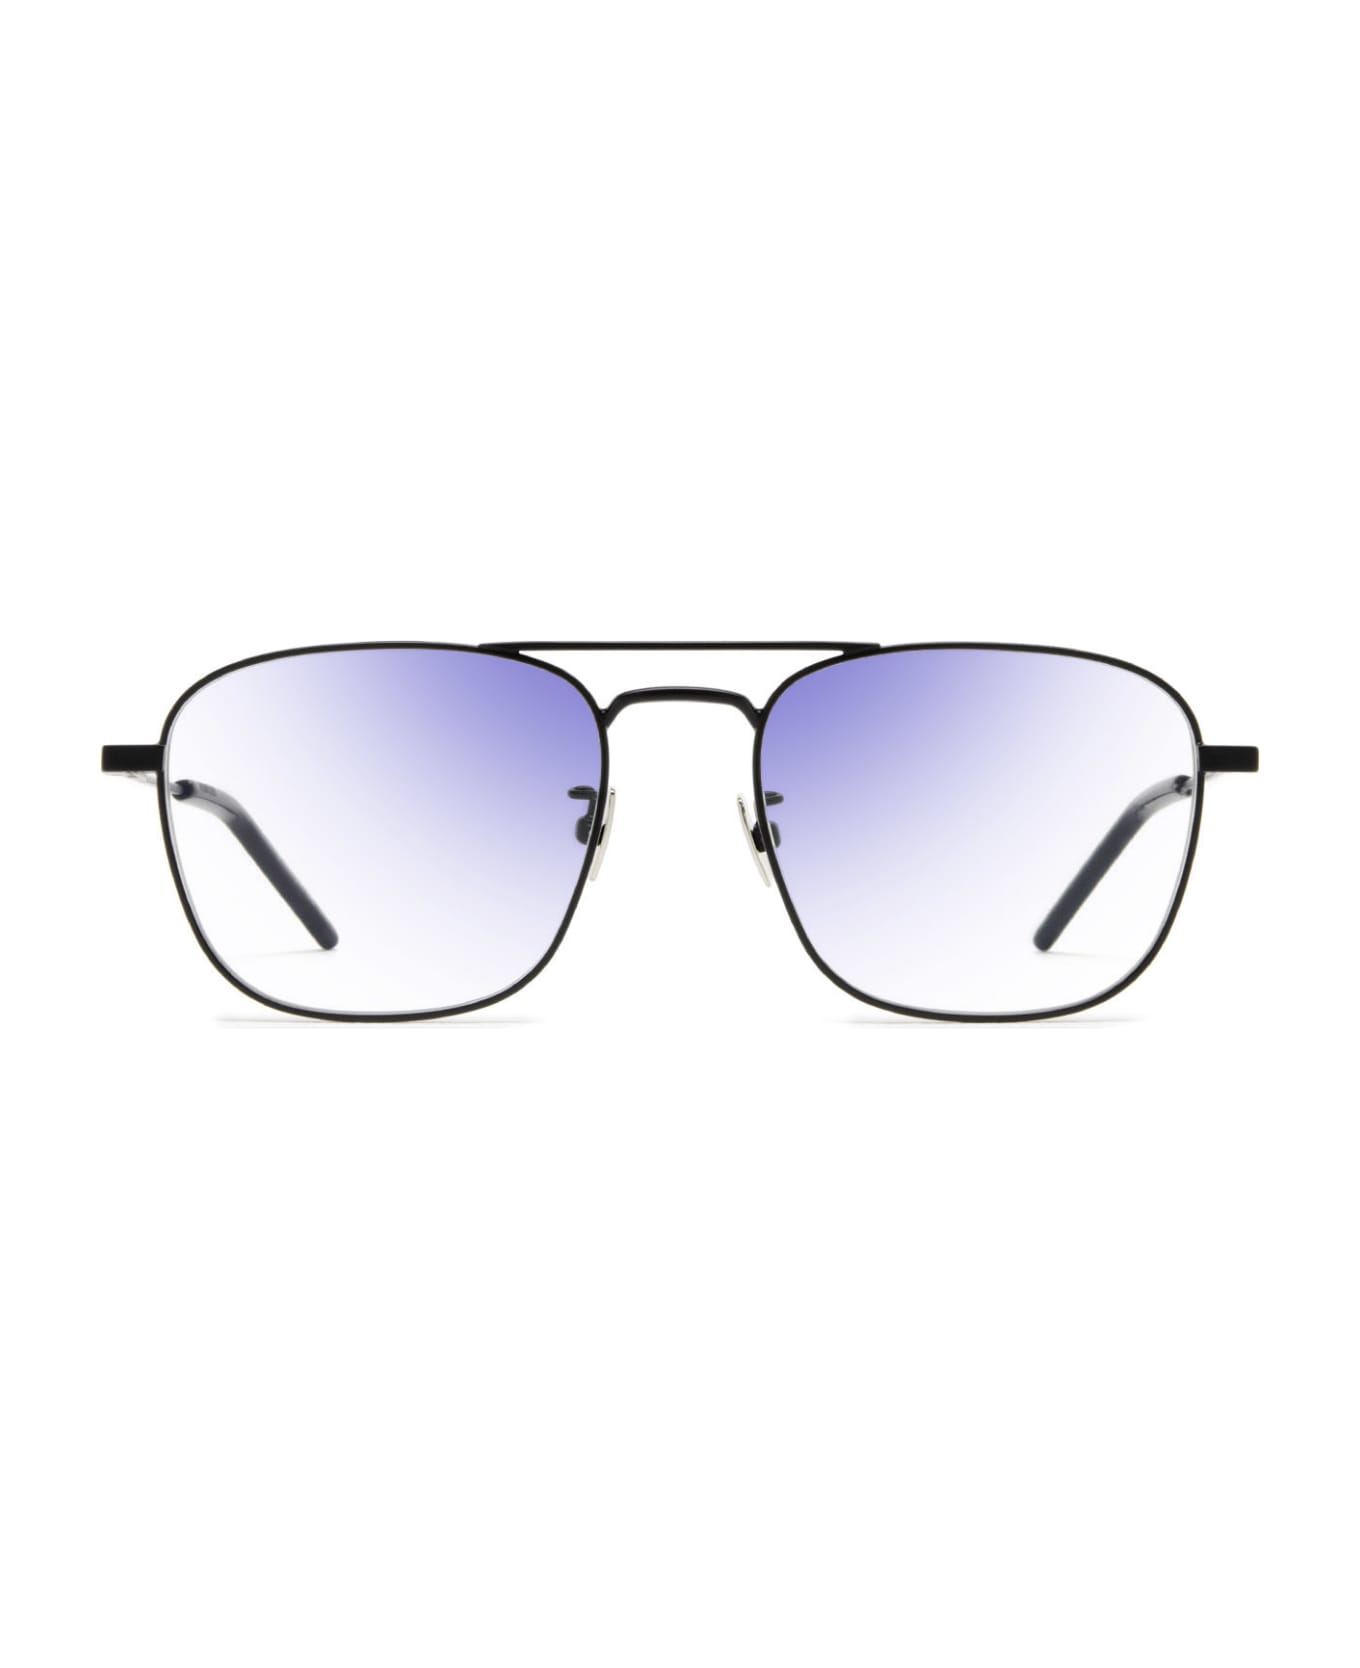 Saint Laurent Eyewear Sl 309 Sun Black Sunglasses - Black サングラス